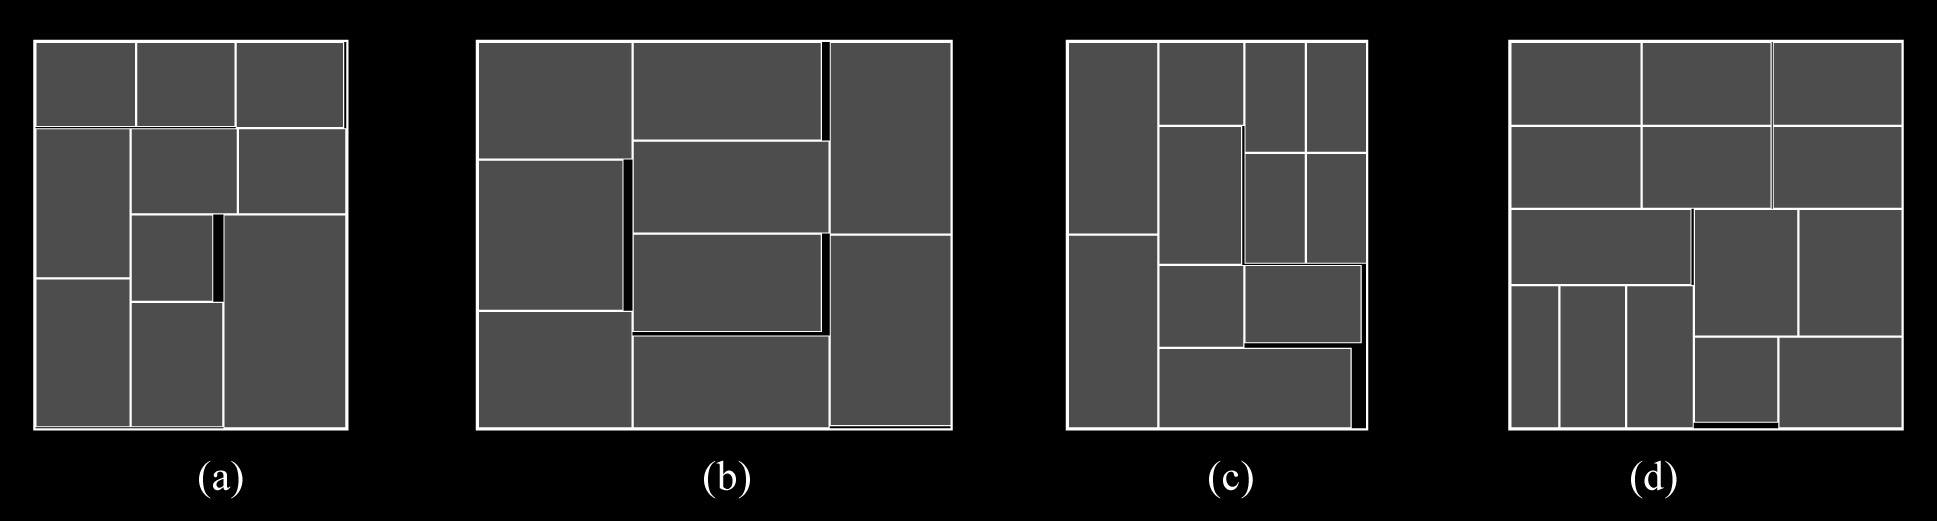 Geração de padrões de cortes bidimensionais guilhotinados restritos via programação dinâmica e busca em grafo-e/ou termos de qualidade das soluções é bom, quando comparado ao dos métodos FHZ98 e